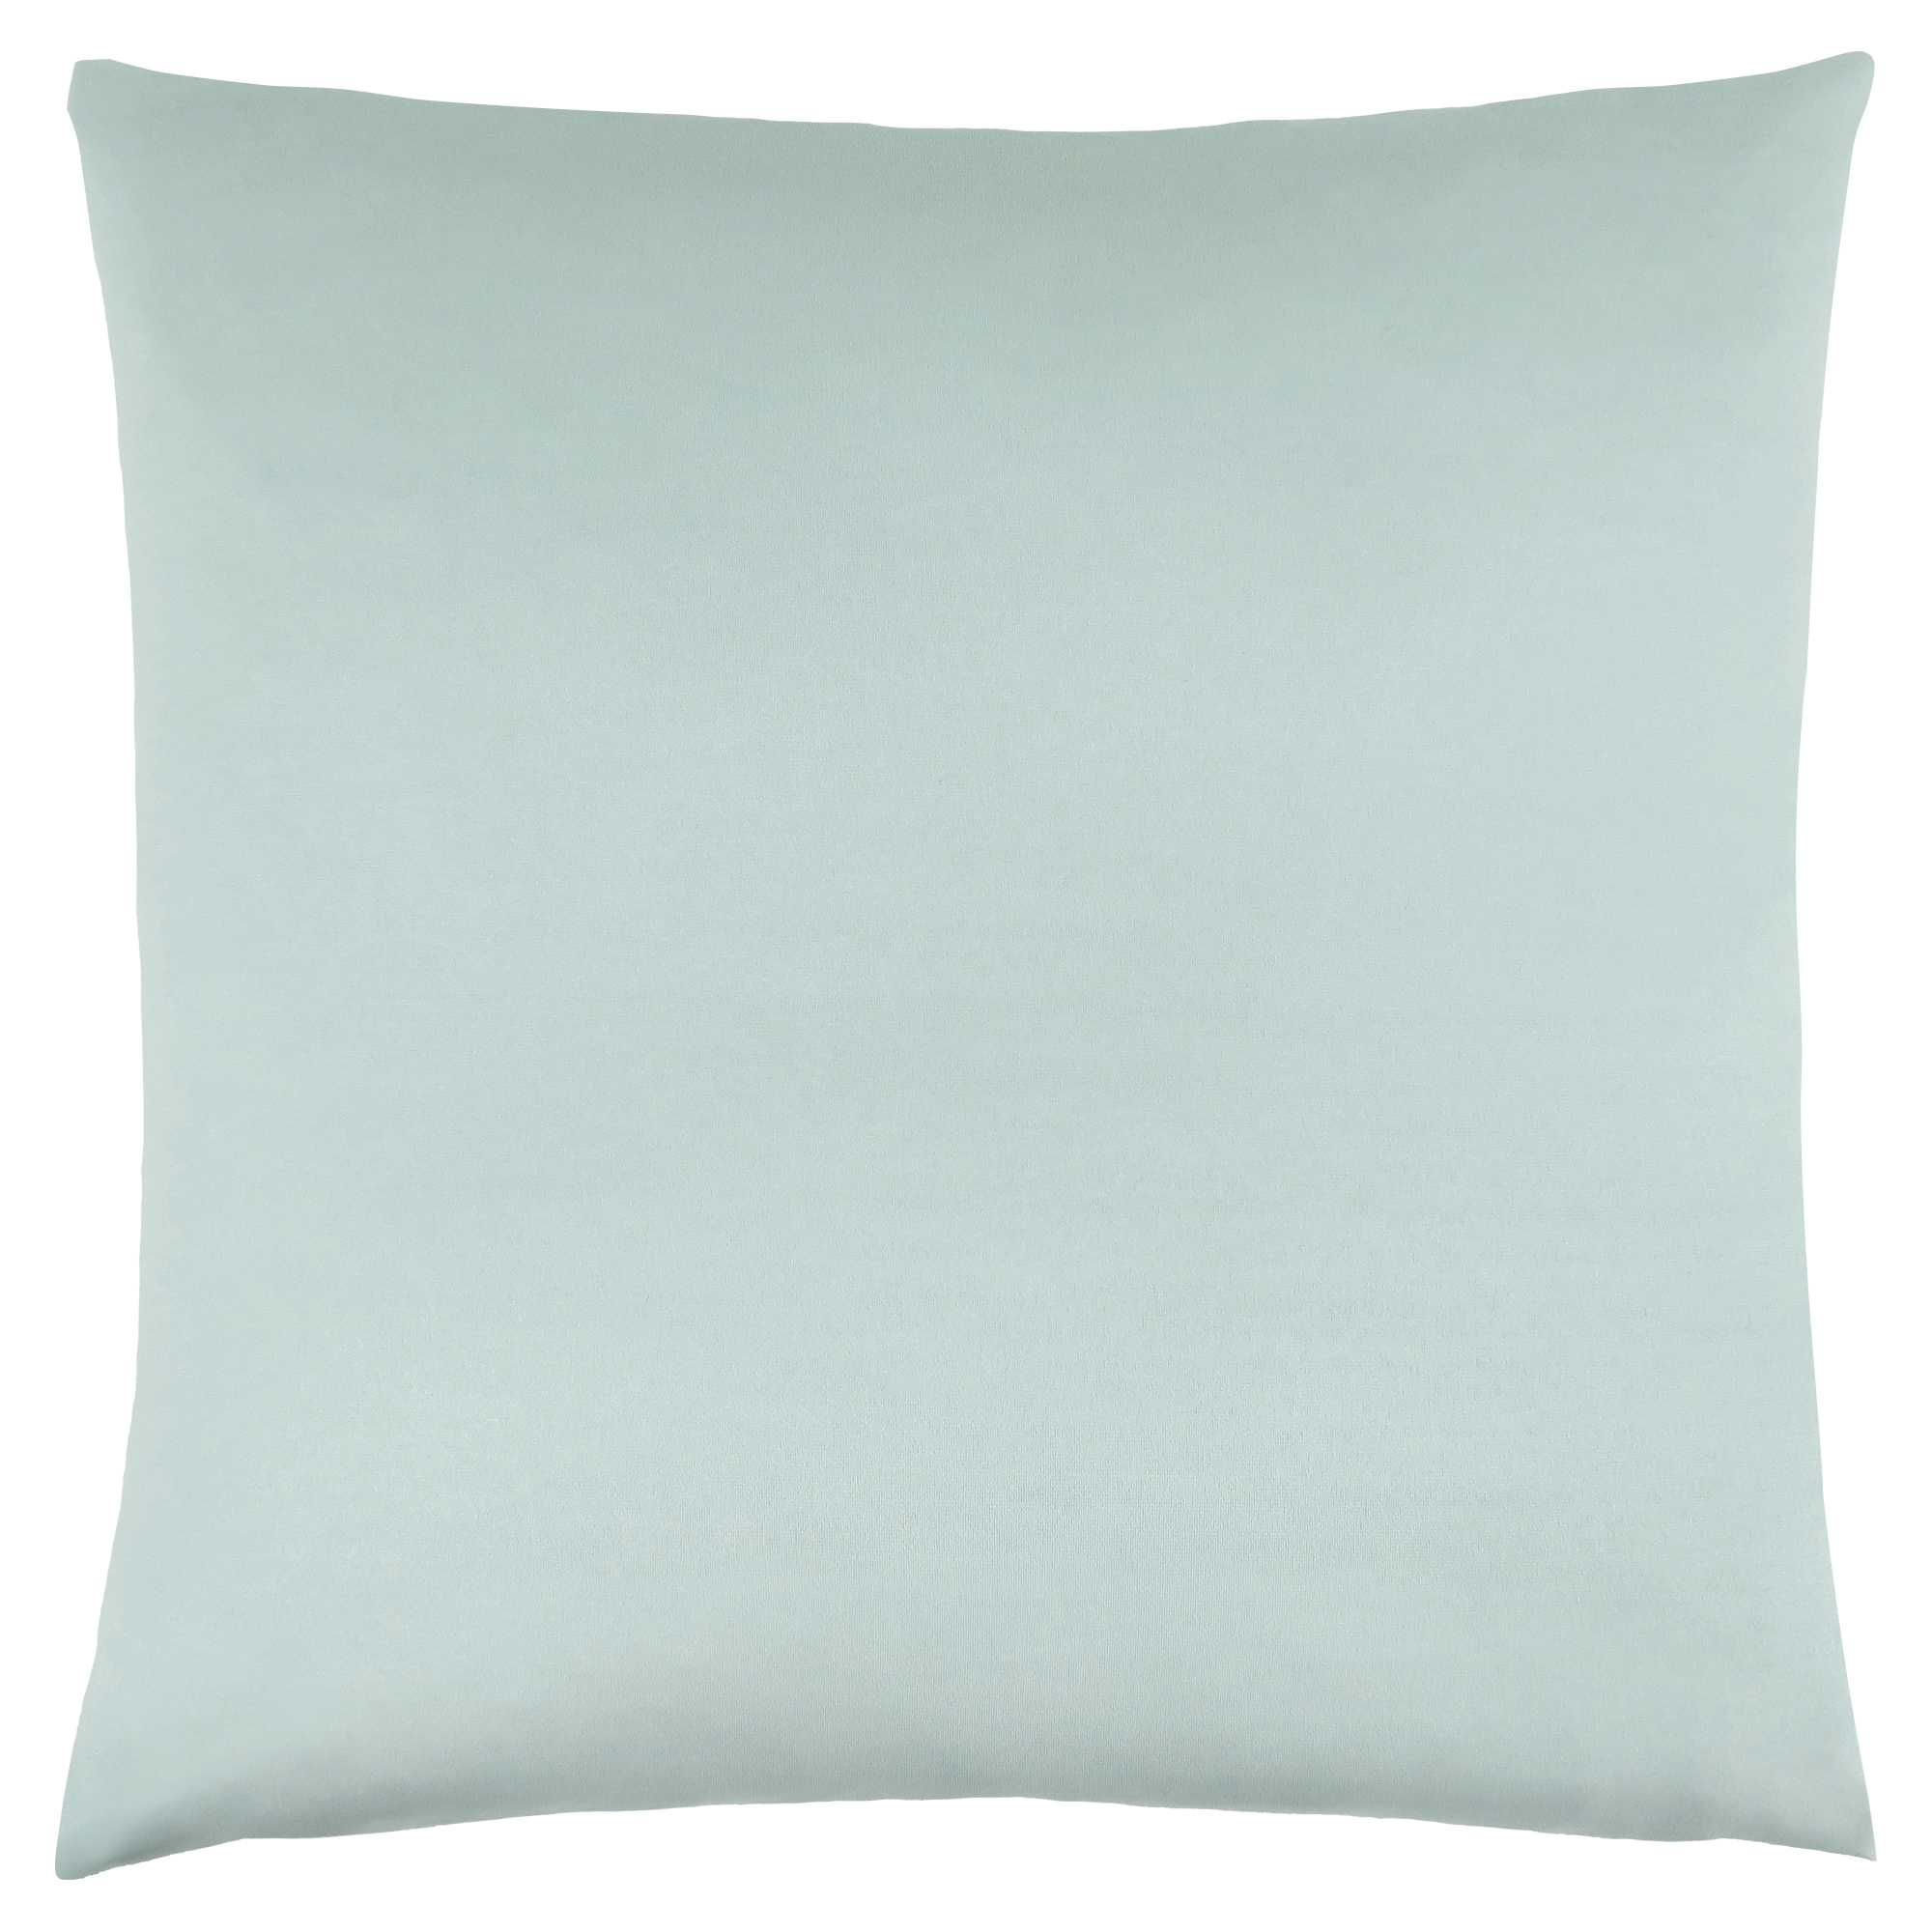 18" X 18" Mint Green Polyester Zippered Pillow-344080-1